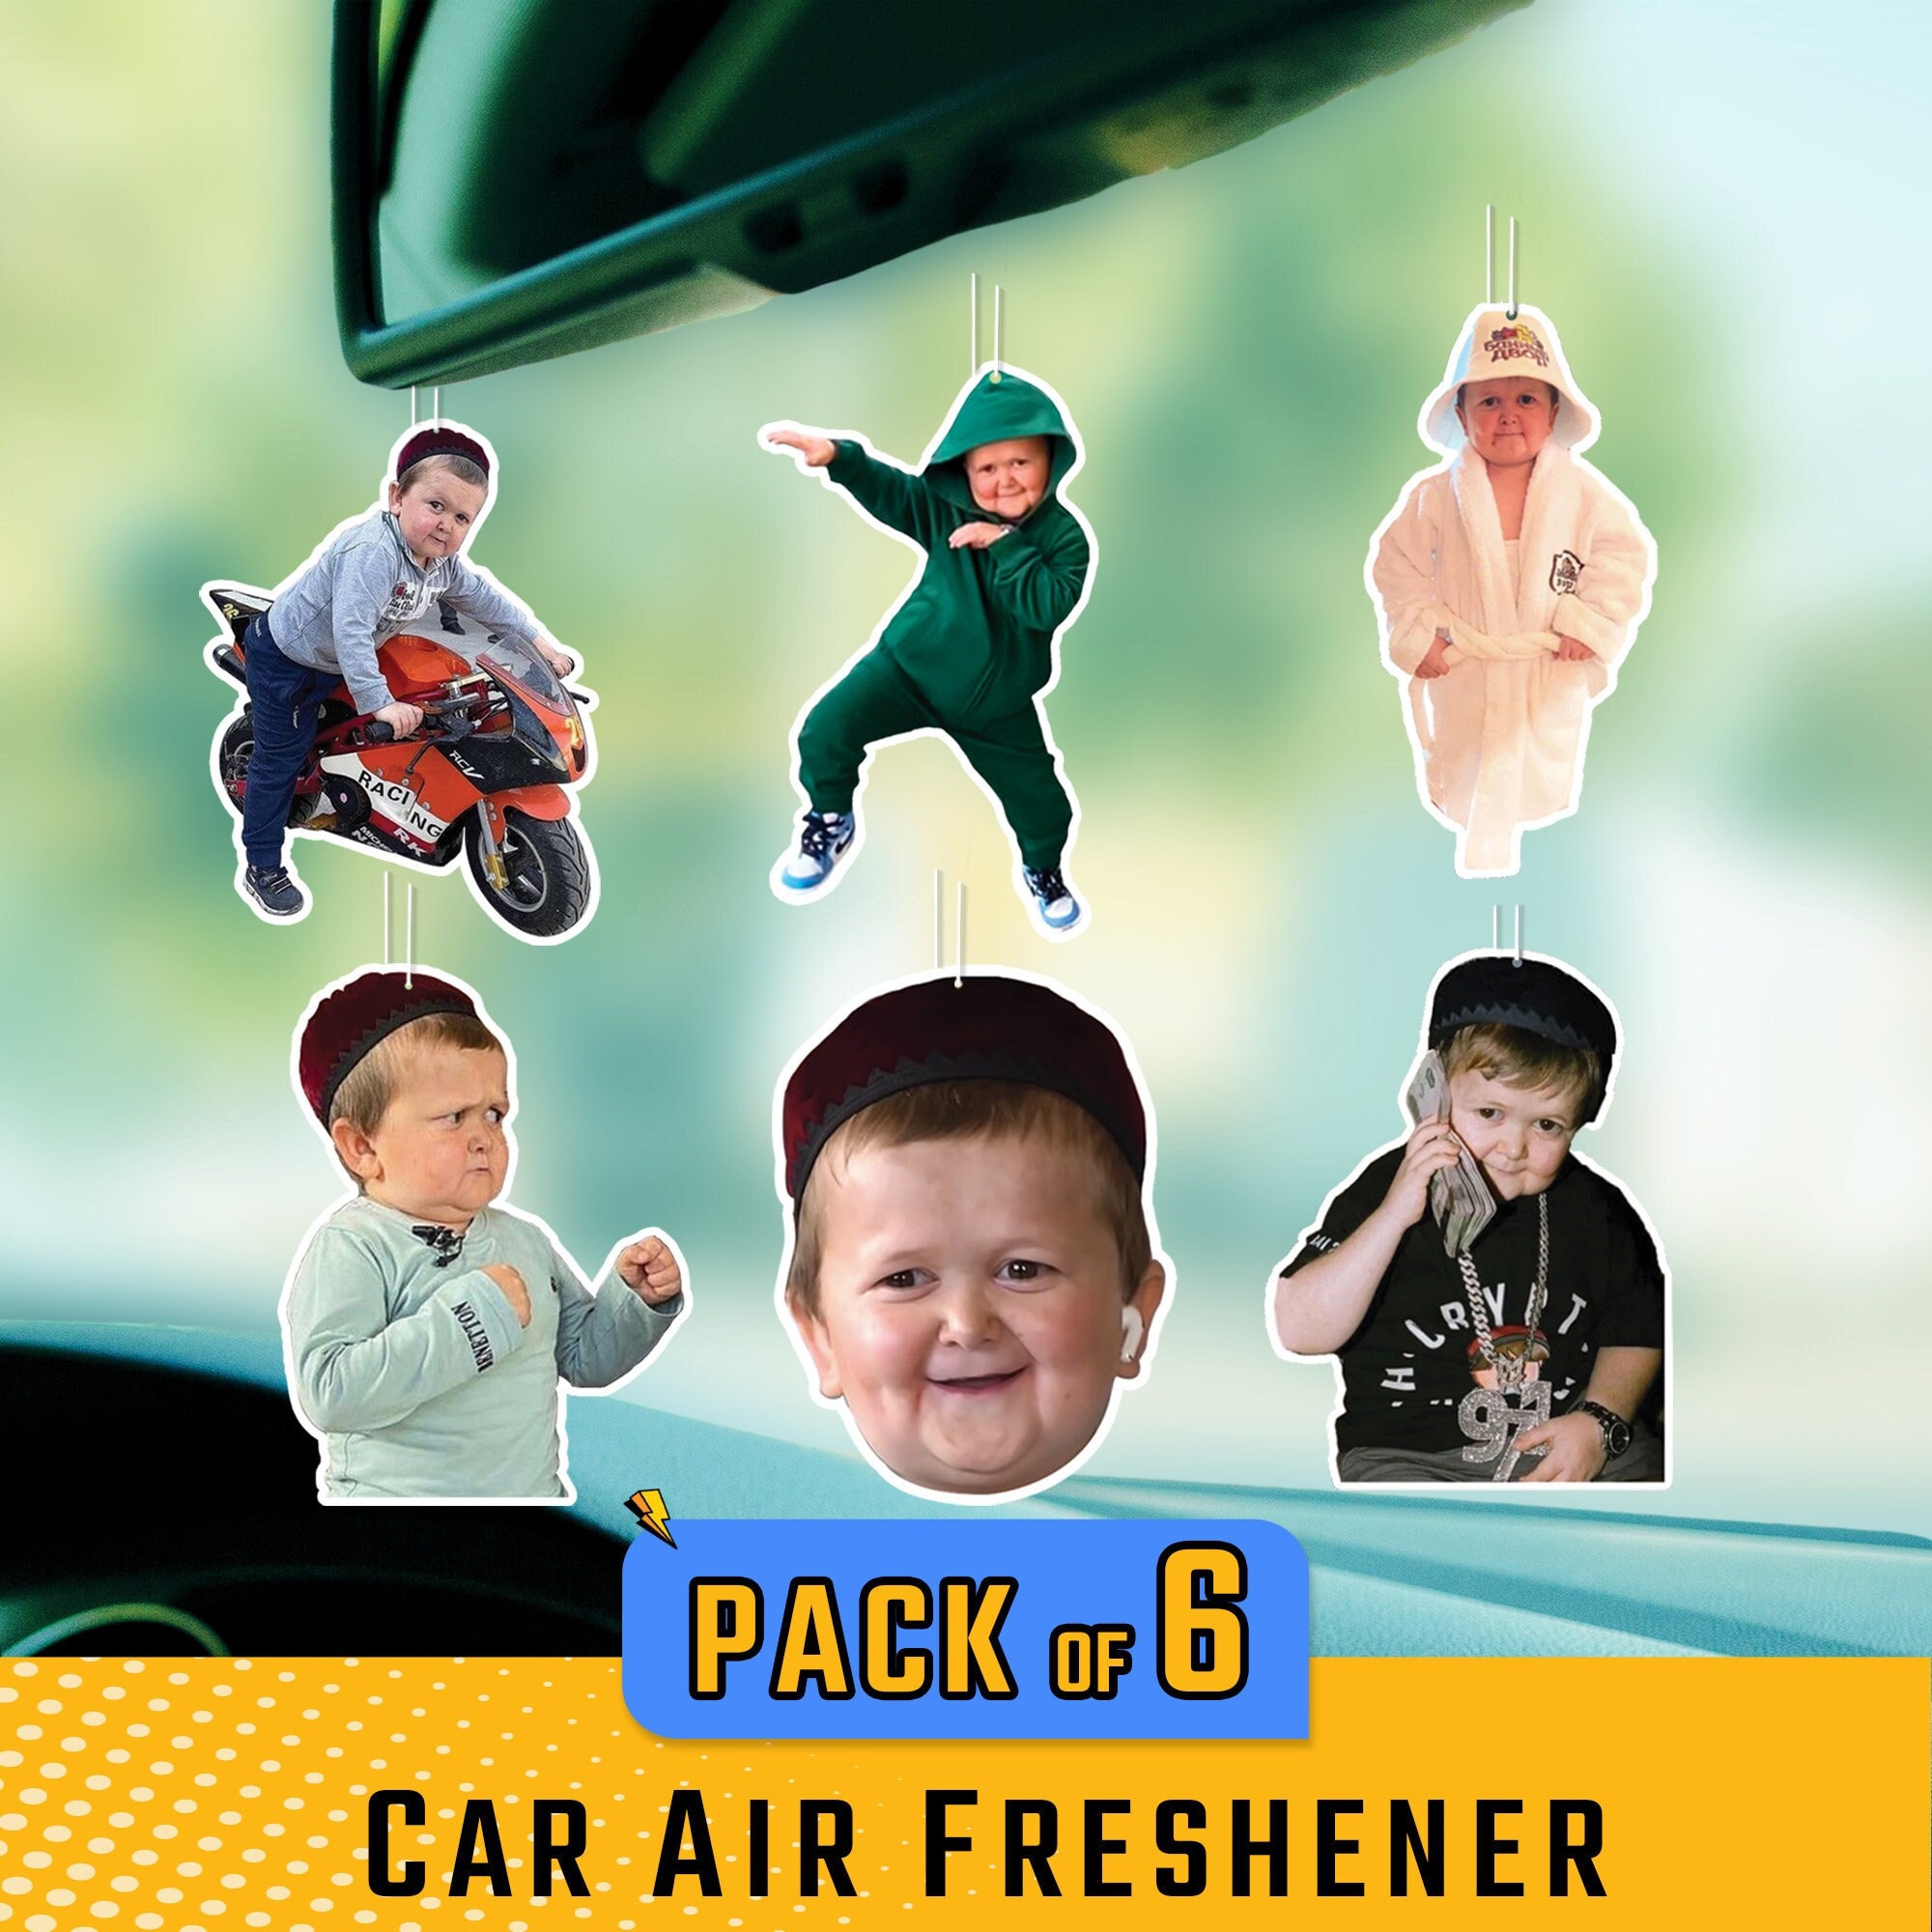 Hasbulla Air Freshener Car Accessories for Men - Meme Car Gift Funny  (Oceans)